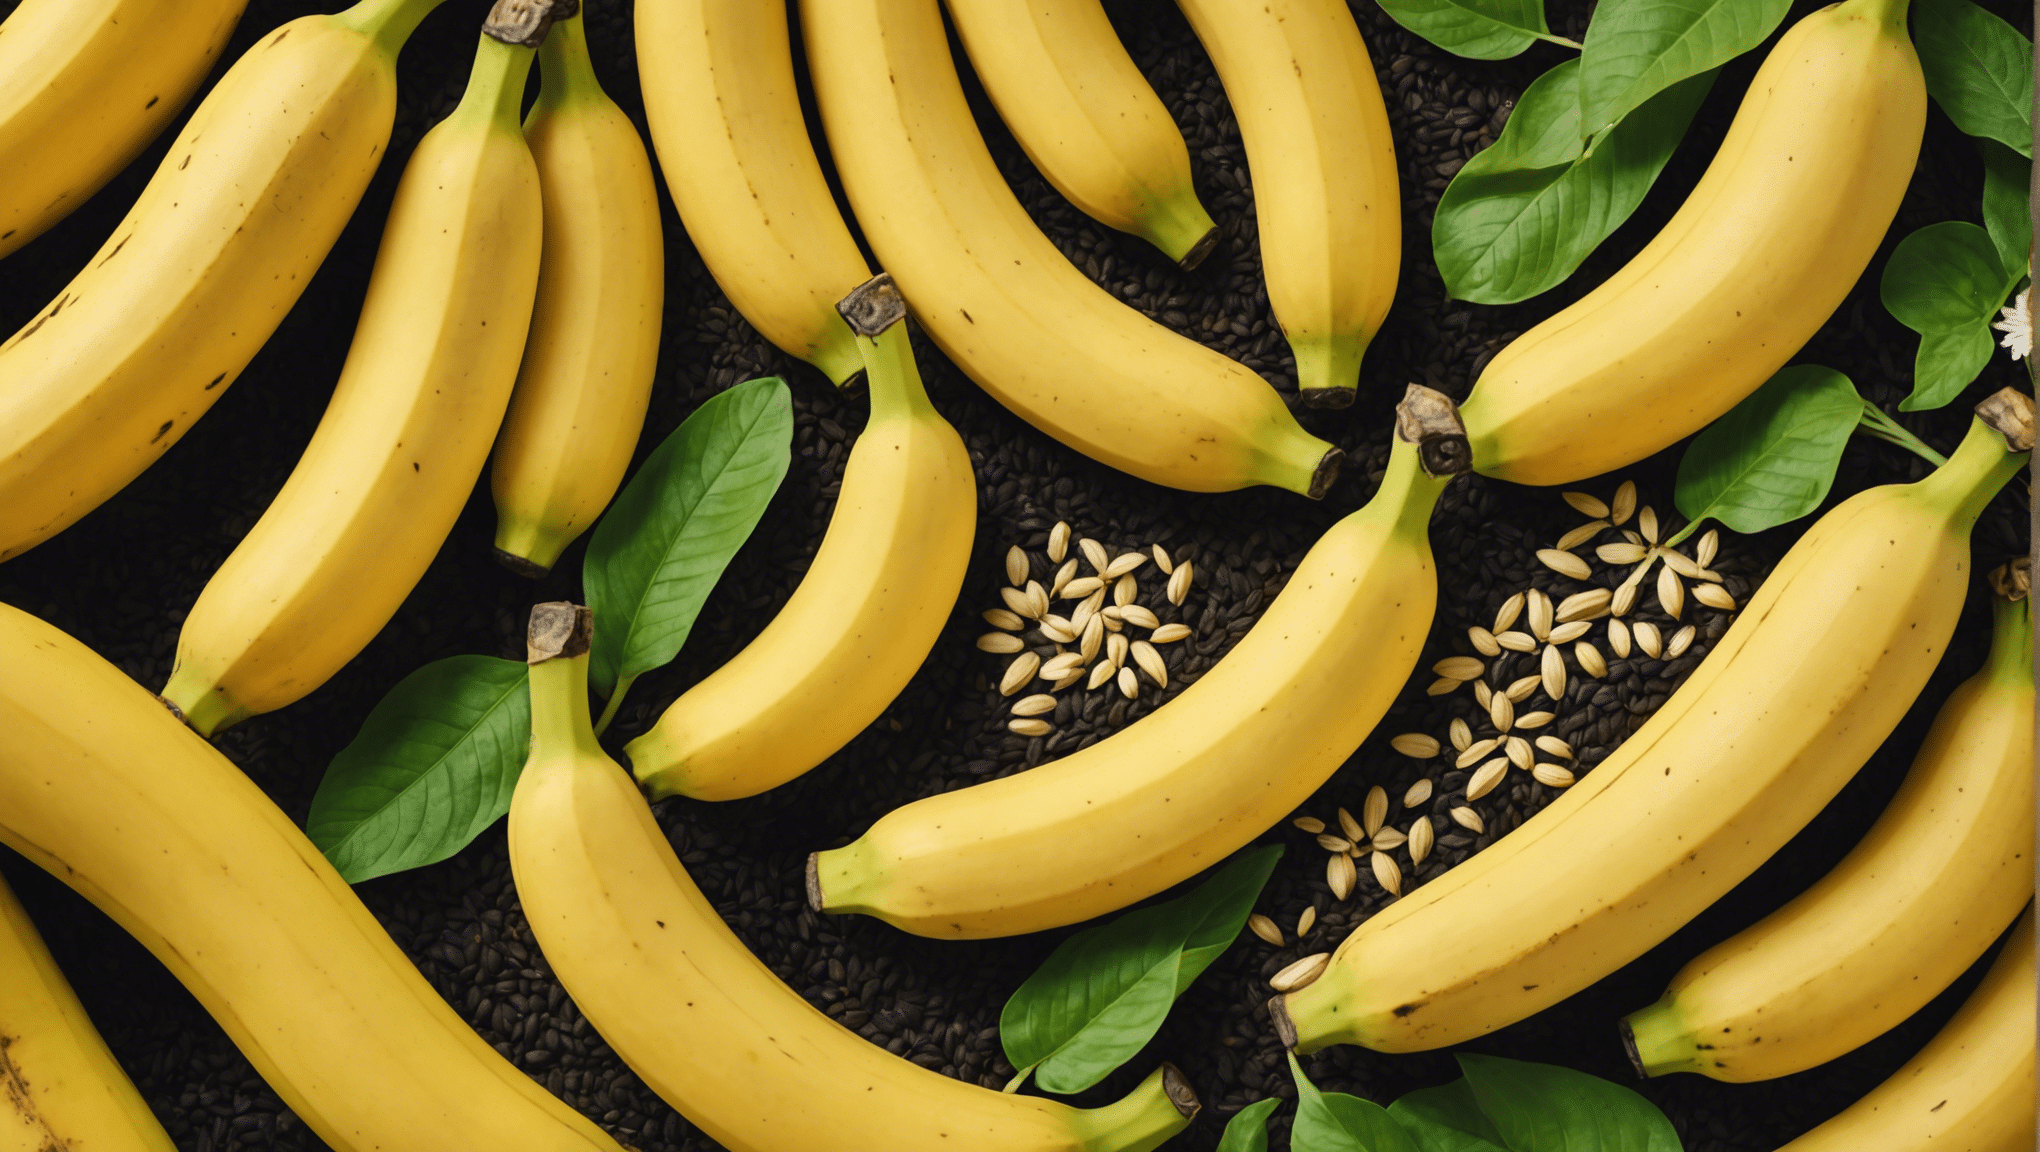 dzięki naszemu obszernemu przewodnikowi dowiesz się, czy można bezpiecznie jeść banany z nasionami. dowiedz się o potencjalnym ryzyku i korzyściach wynikających ze spożywania bananów z nasionami.